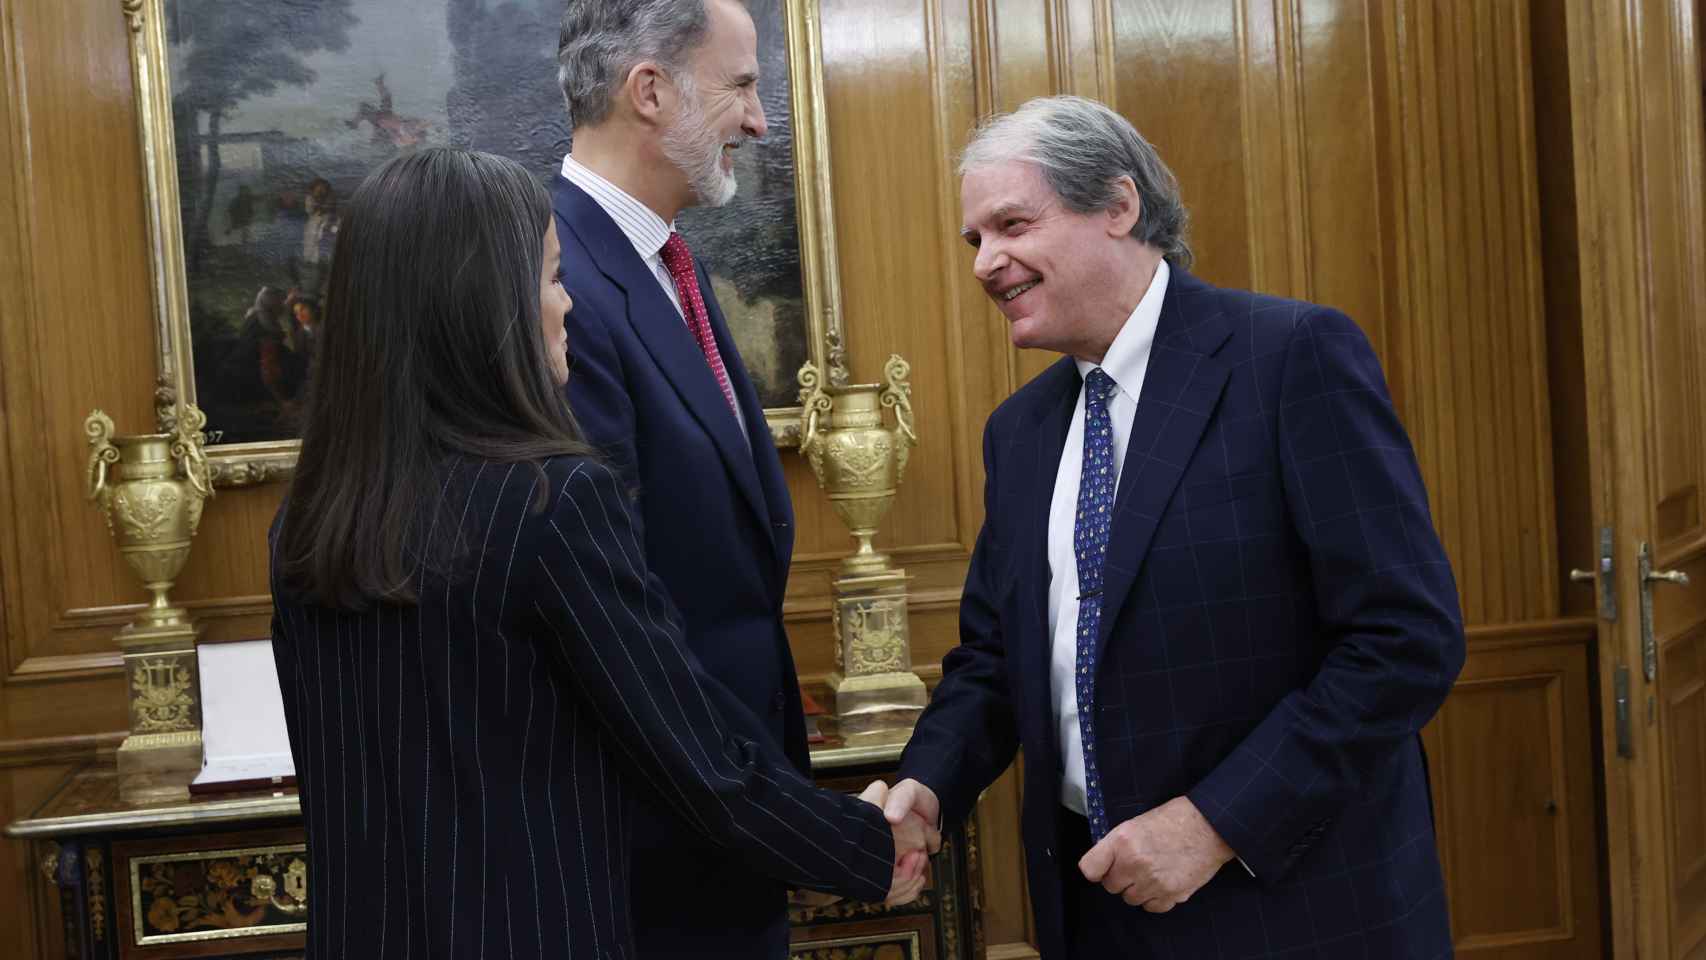 Los Reyes, Felipe VI y Letizia, saludando a un miembro de la reunión en la Zarzuela, este lunes 21 de noviembre.